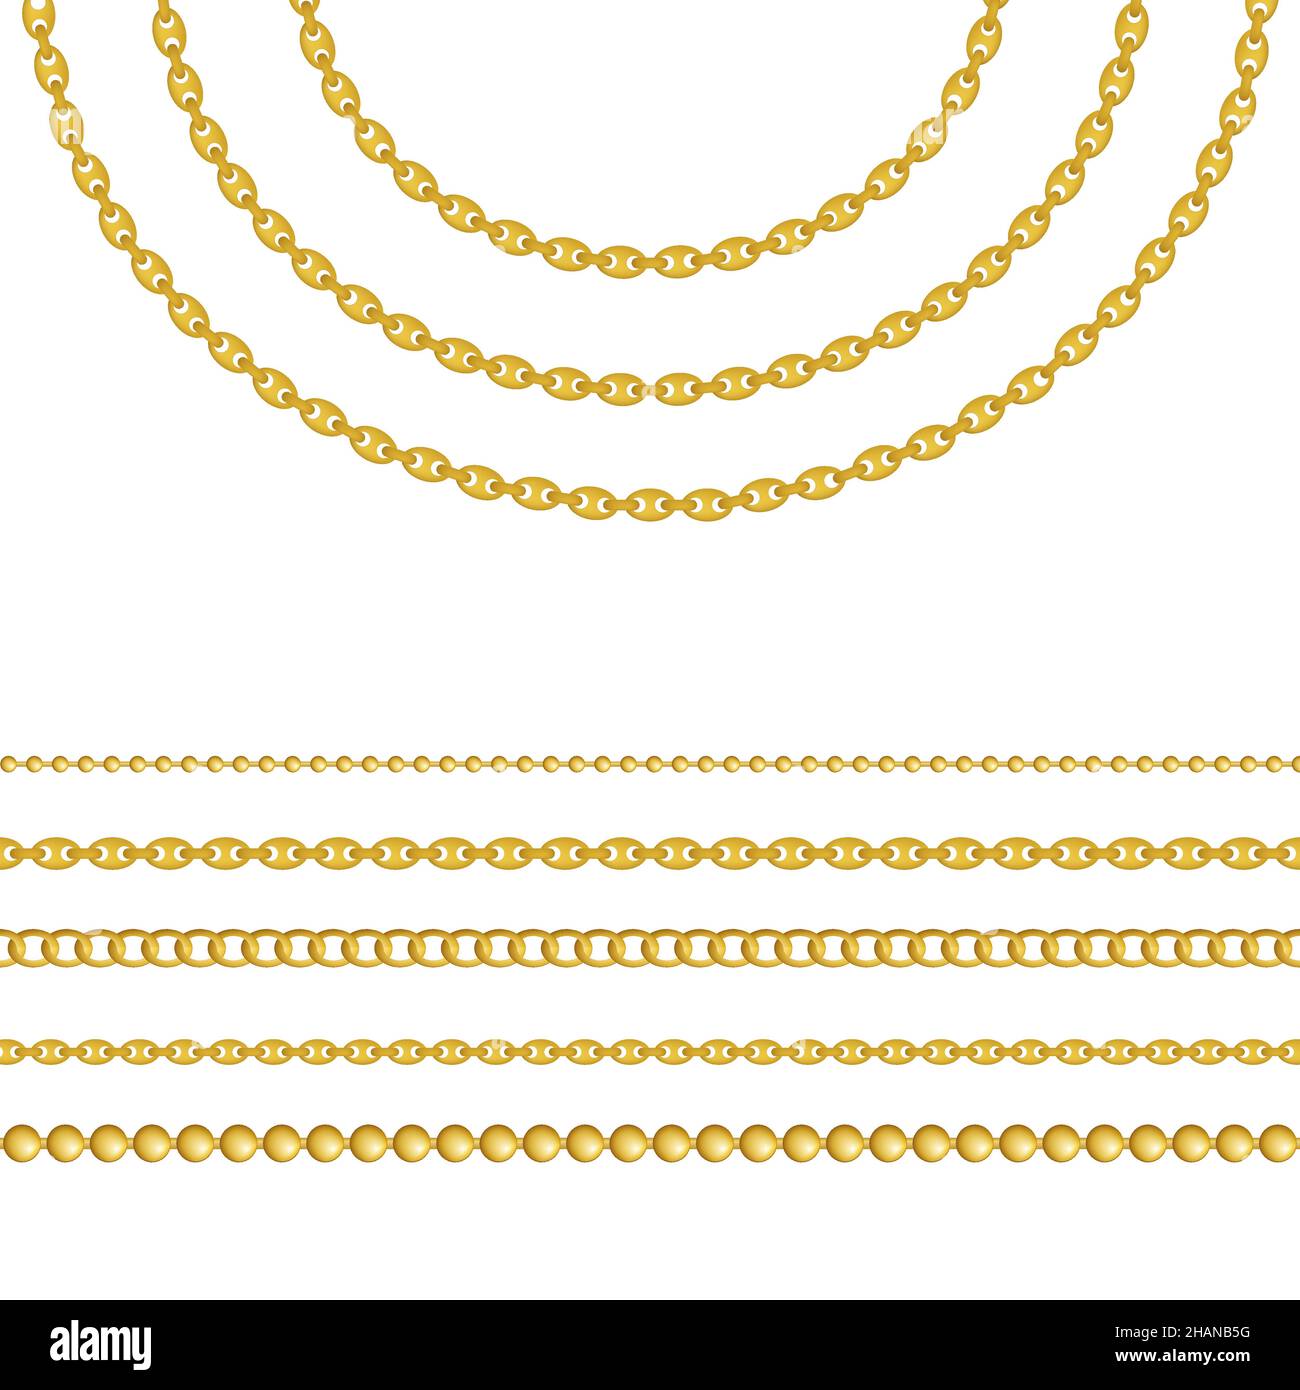 Chaîne d'or, isolée sur fond blanc.Illustration vectorielle. Illustration de Vecteur